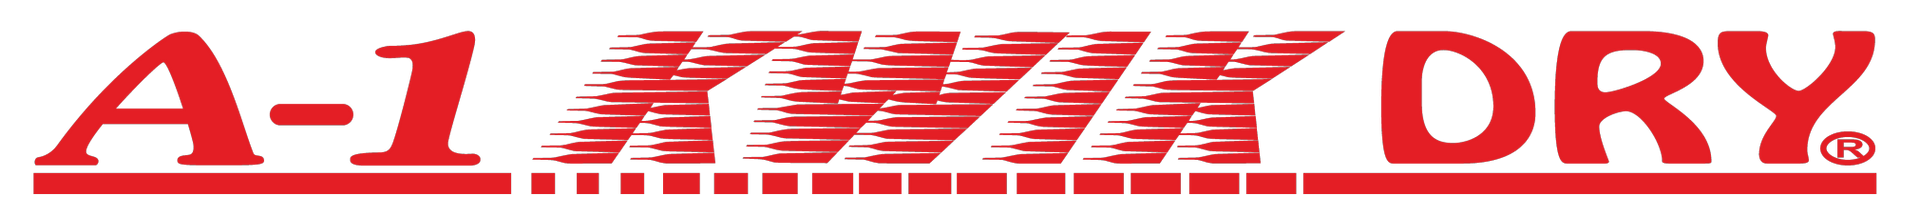 A-1 Kwik Dry-Logo